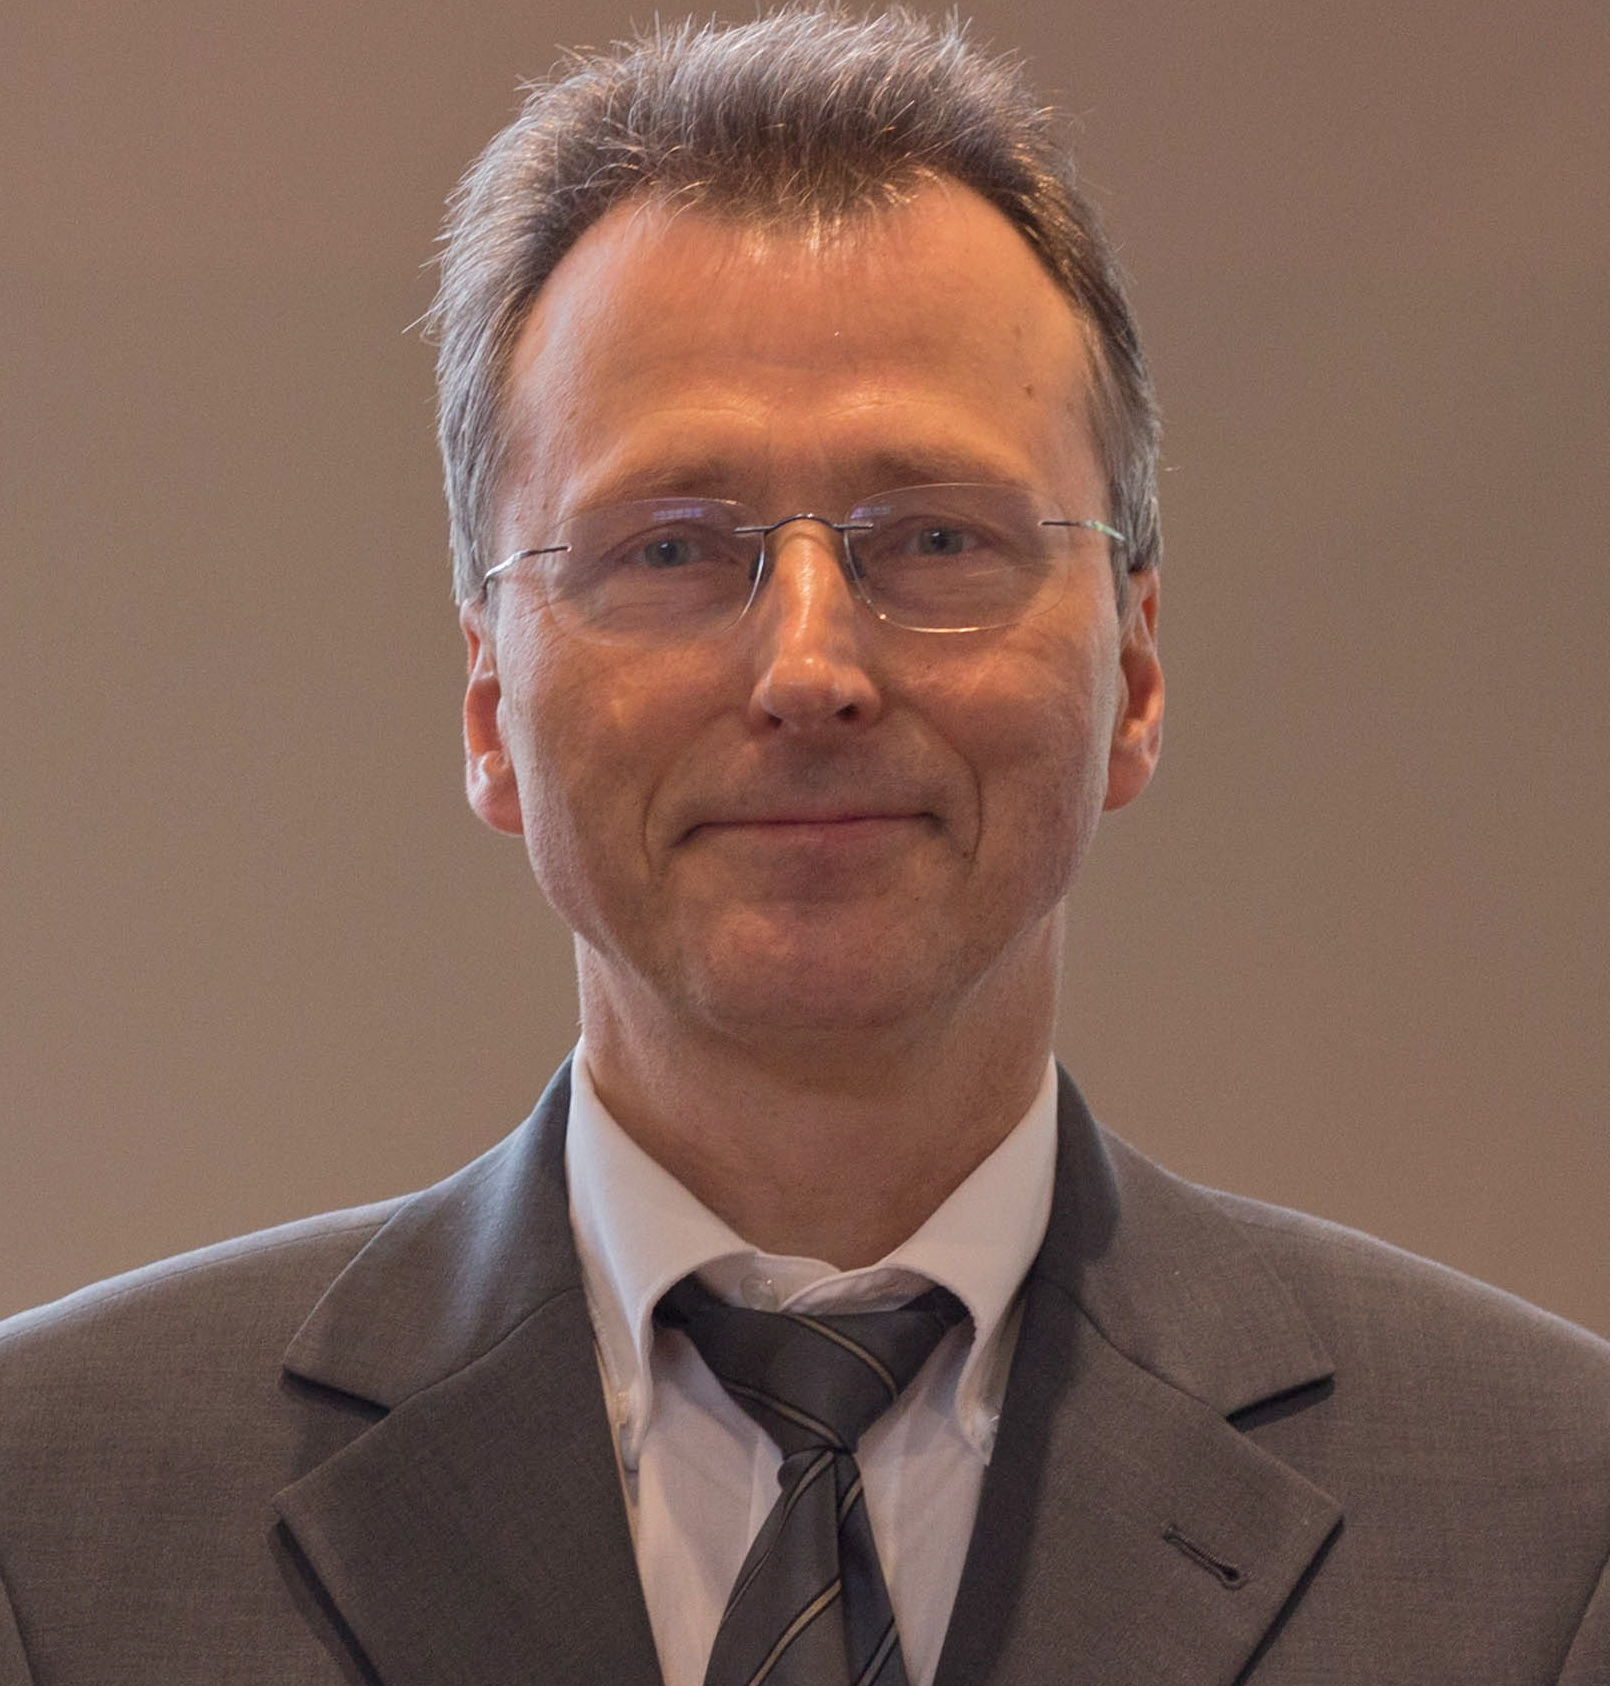 prof. dr. DMKH Grube, MA